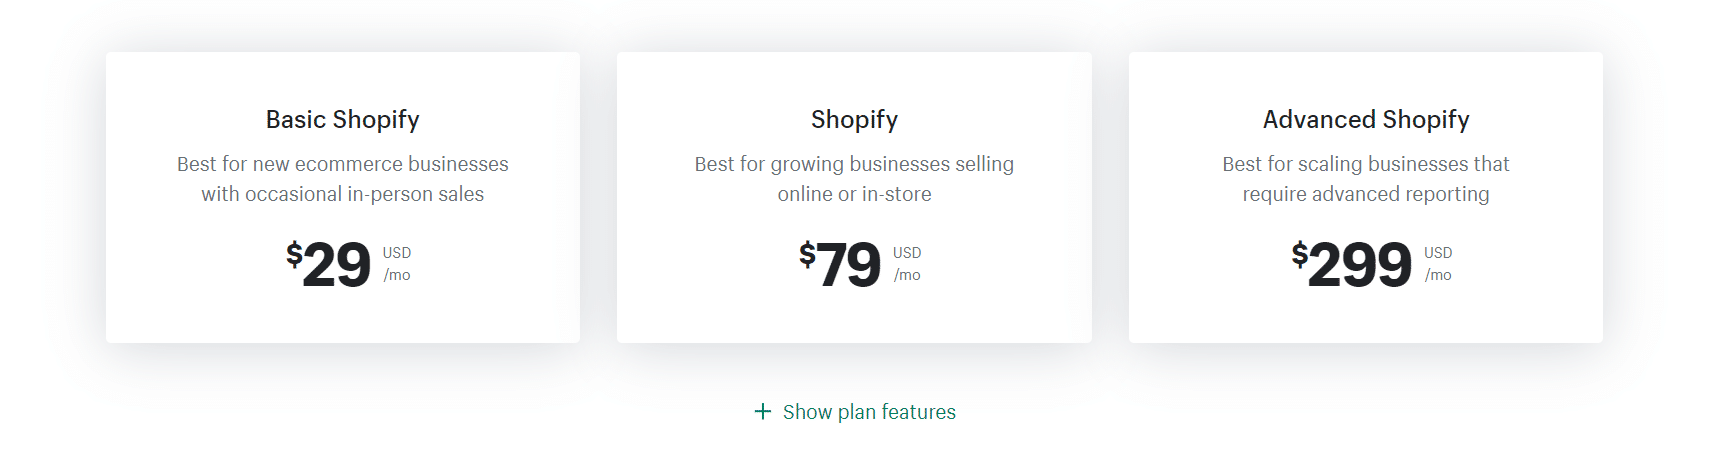 Prezzi di Shopify